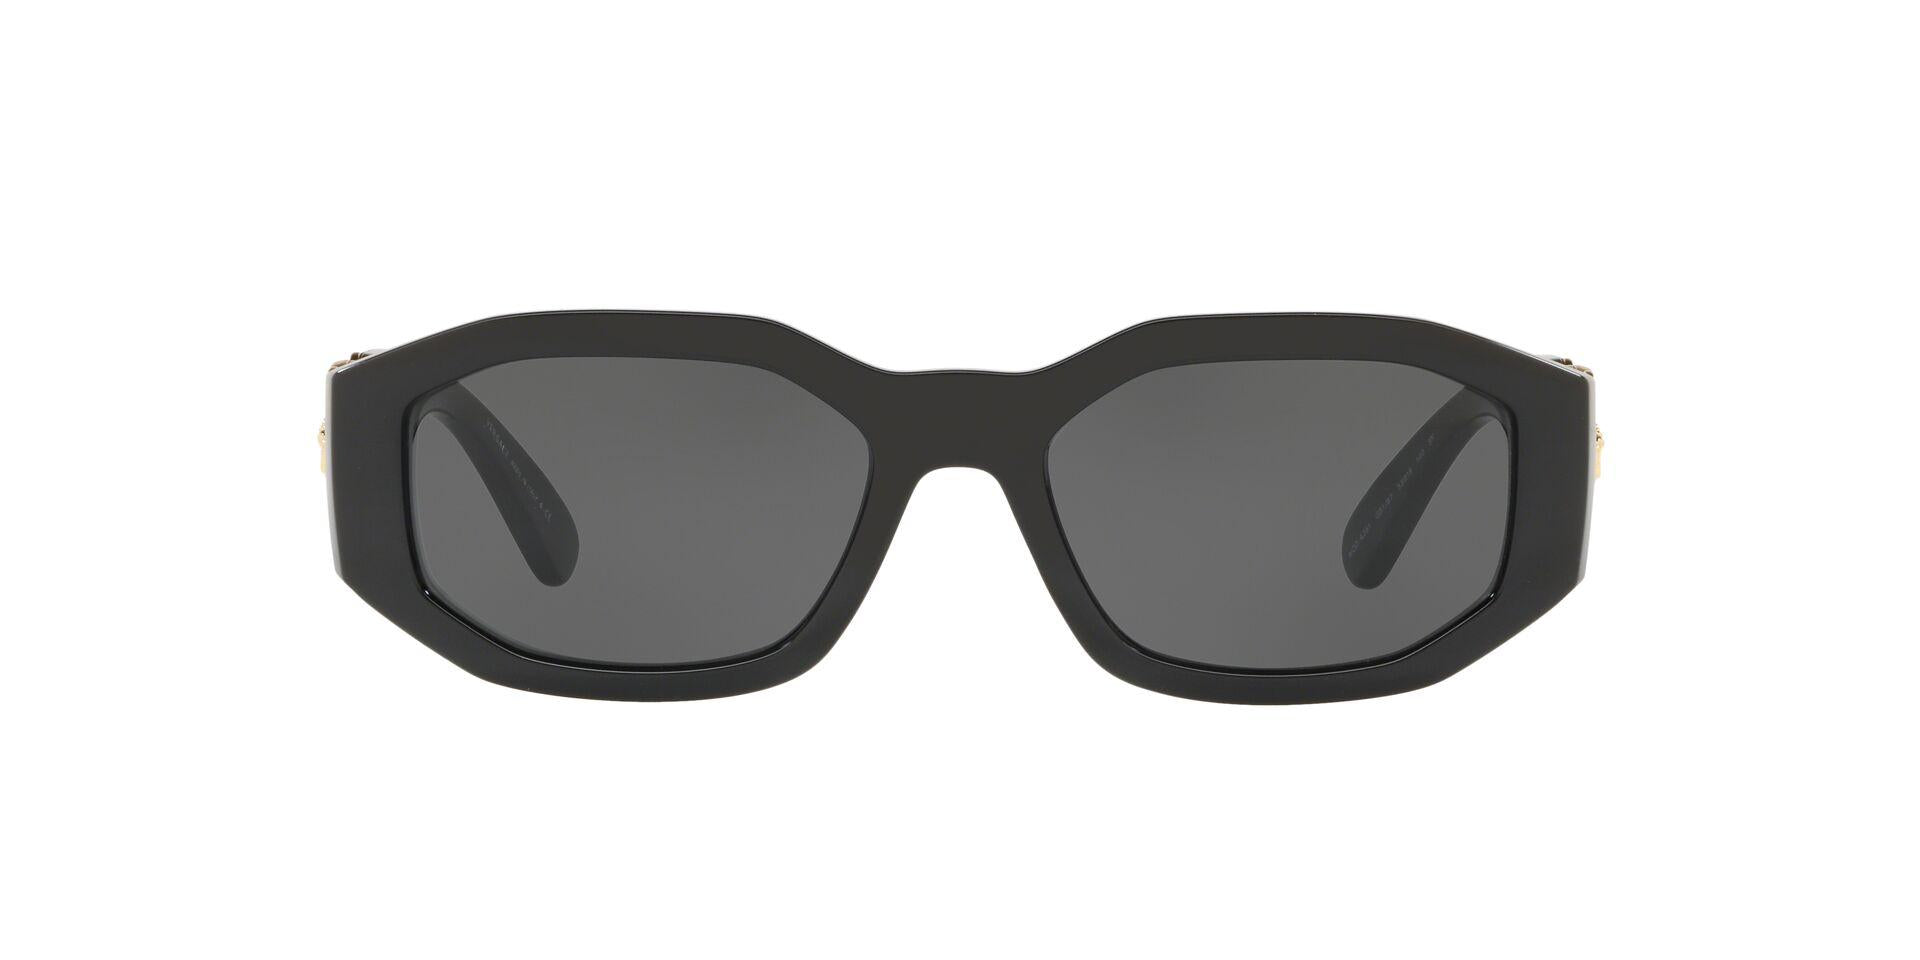 Online Shopping for Designer Sunglasses, Eyeglasses